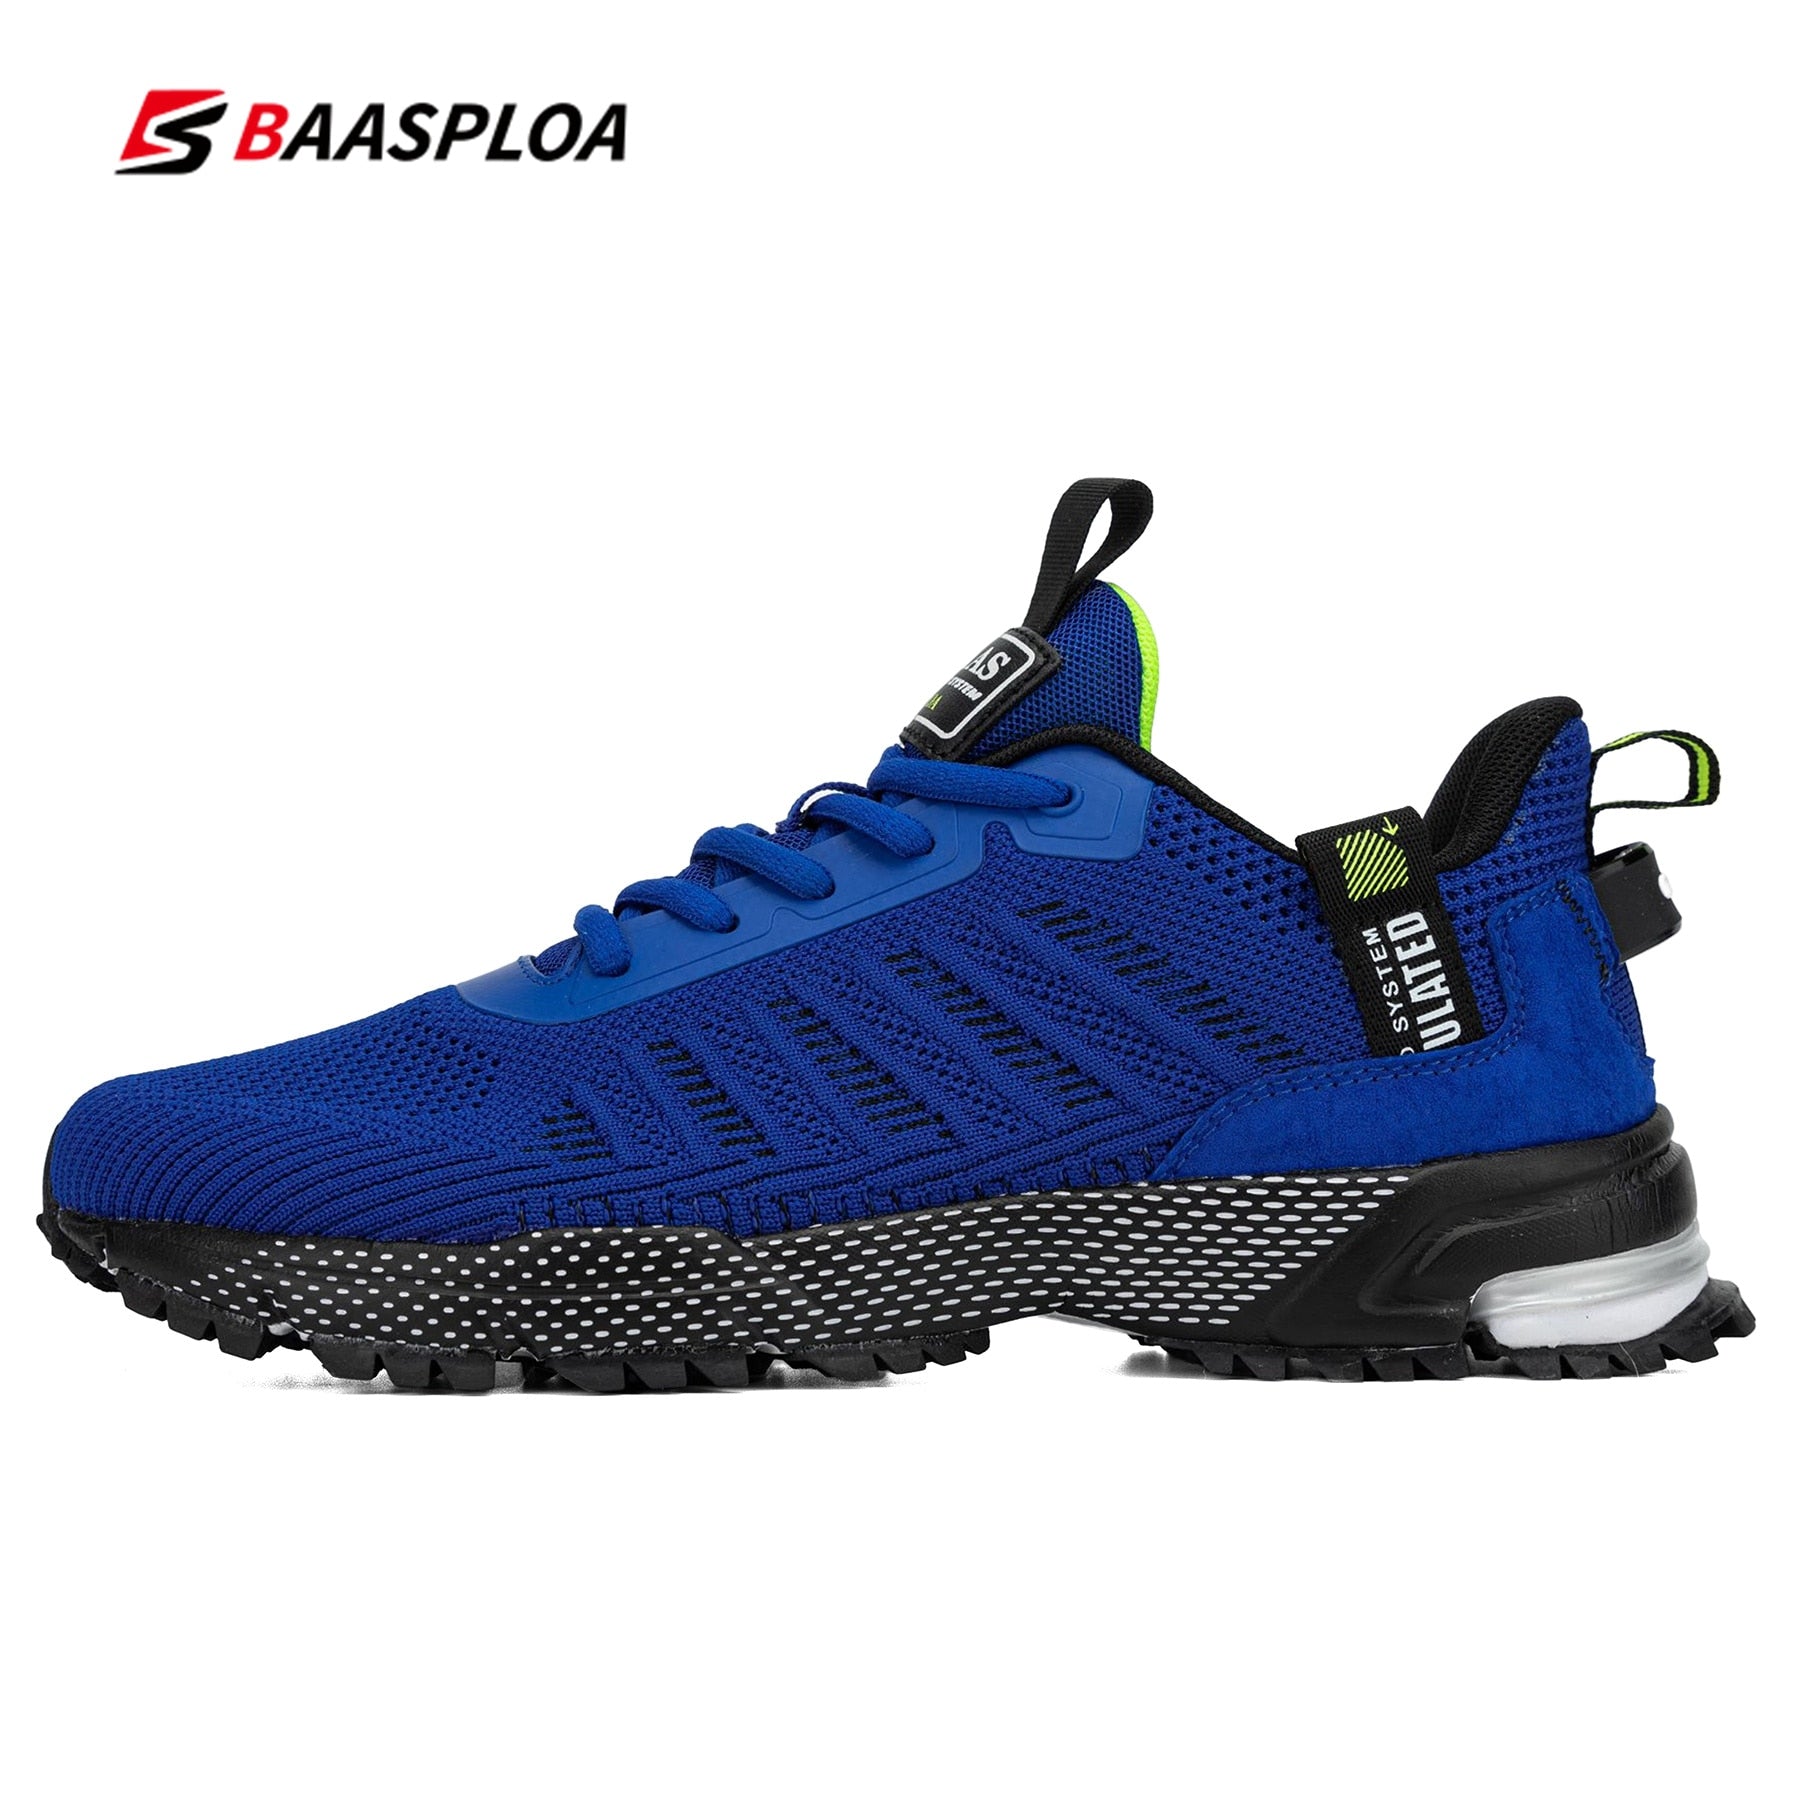 Acheter a01-114101-bl Baasploa Professional Lightweight Running Shoes for Men